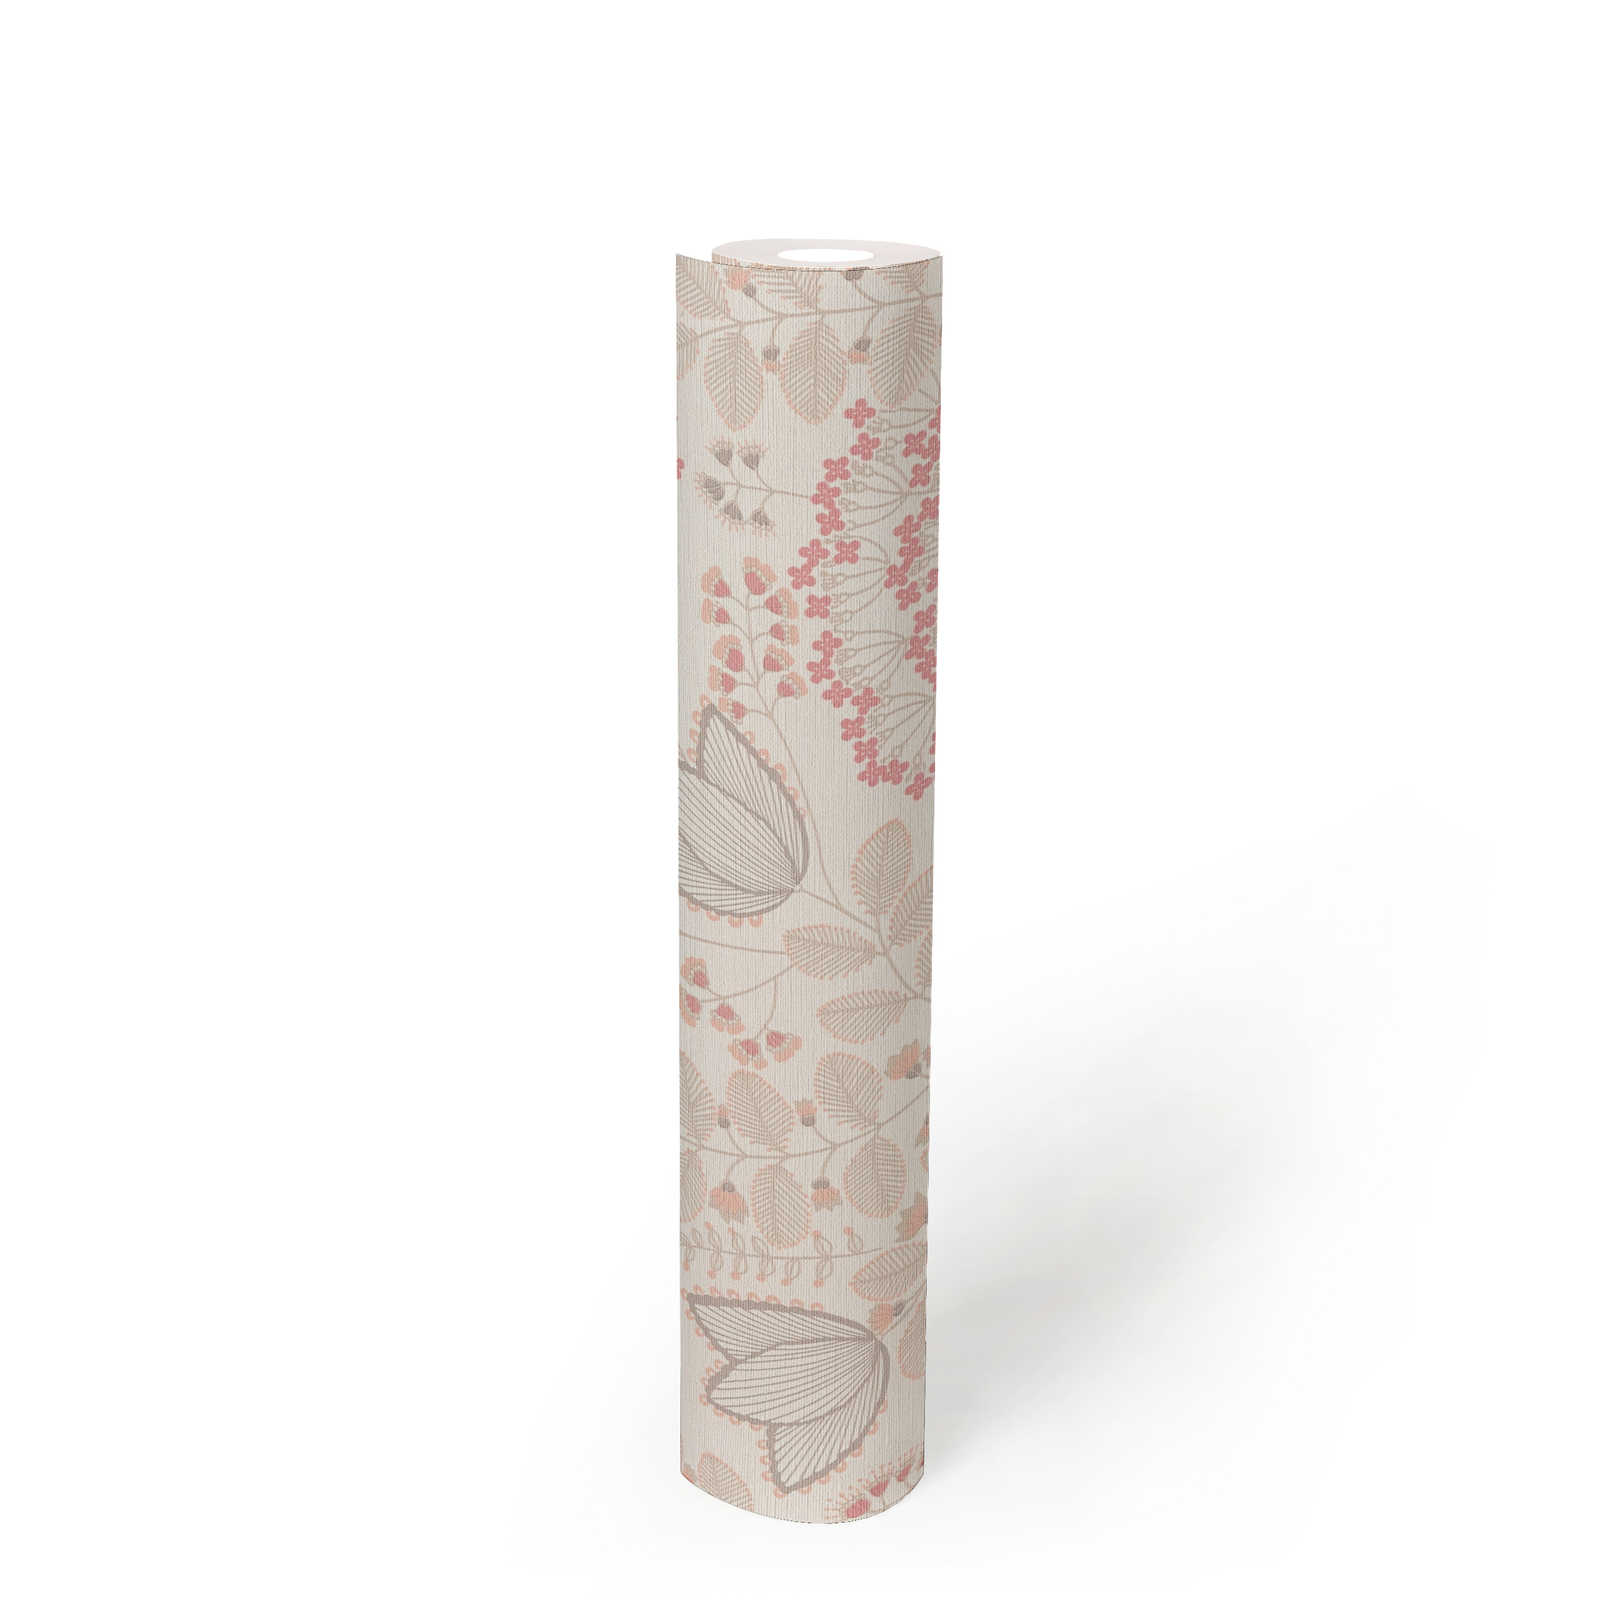             papier peint en papier floral avec des feuilles au design rétro légèrement structuré, mat - blanc, taupe, rose
        